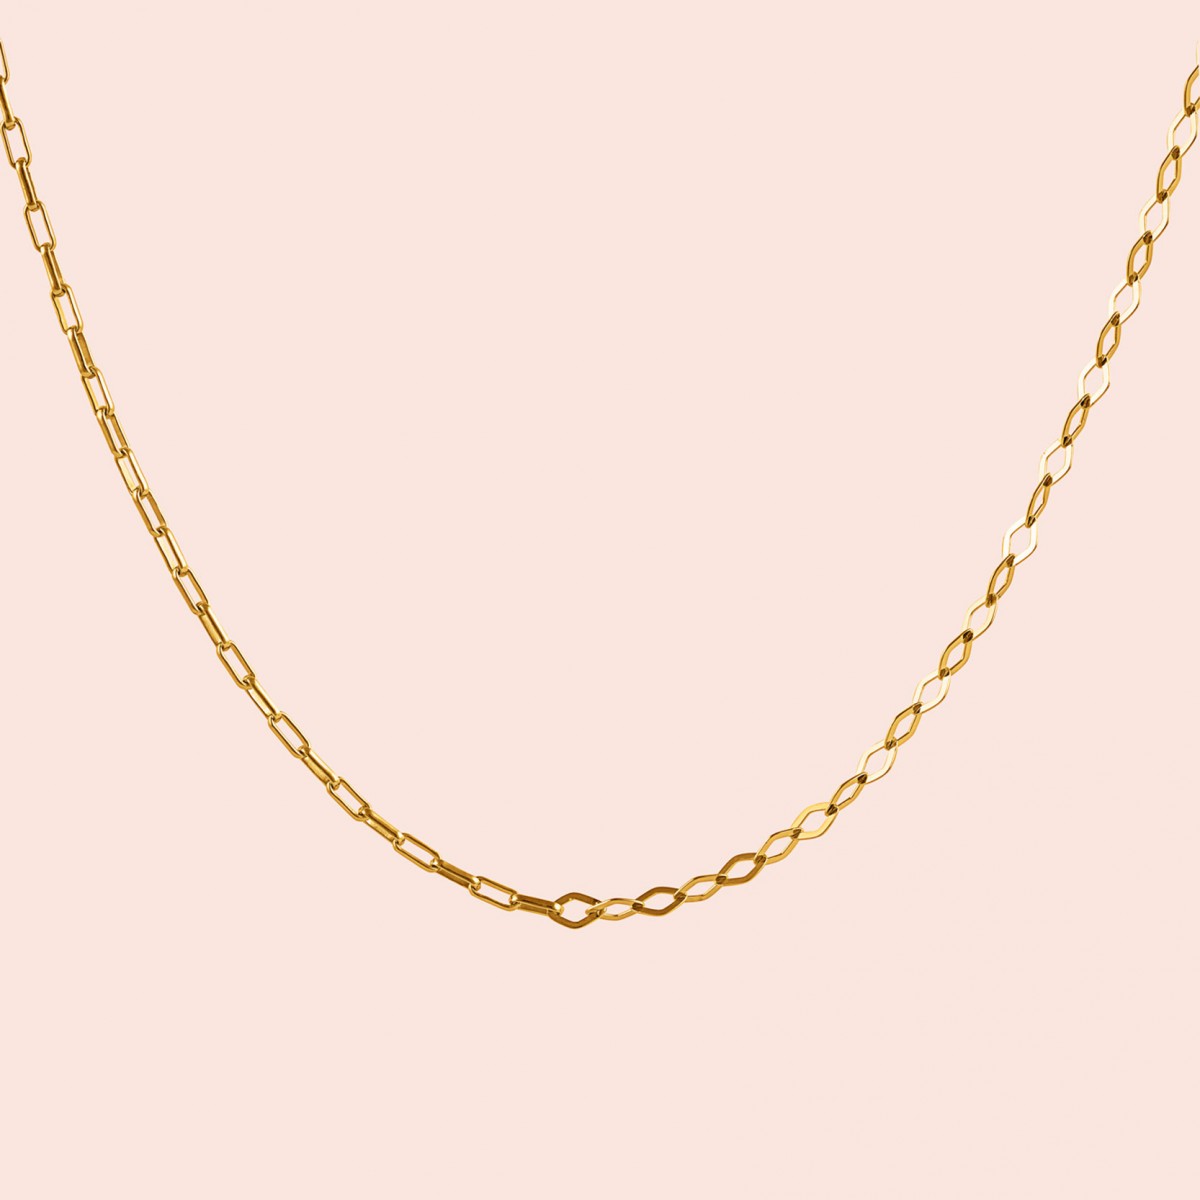 related by objects - just diamonds necklace - 925 Sterlingsilber 18k goldplattiert